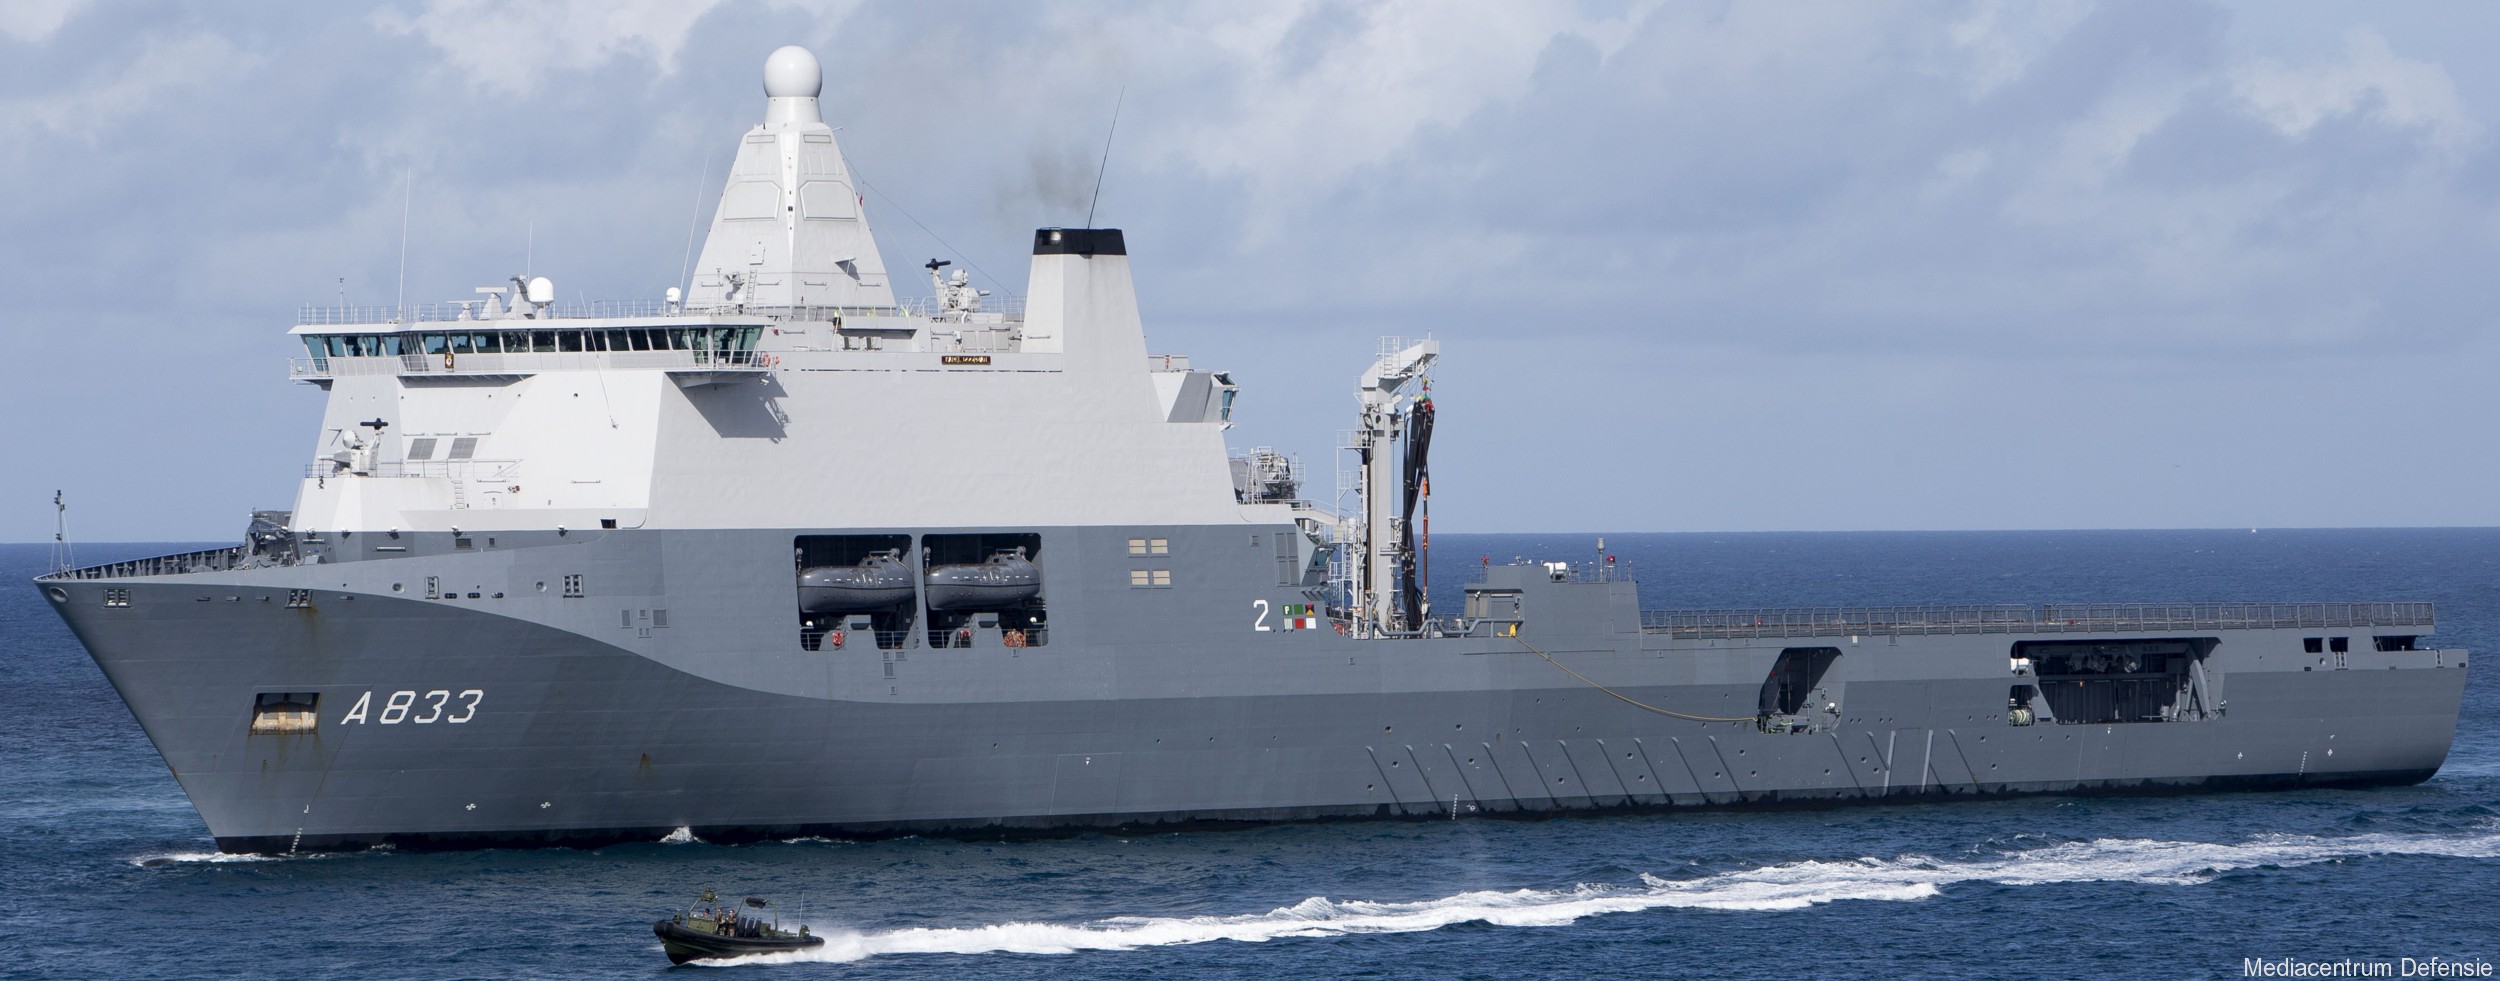 a-833 hnlms karel doorman joint support ship royal netherlands navy koninklijke marine 34 galati damen schelde